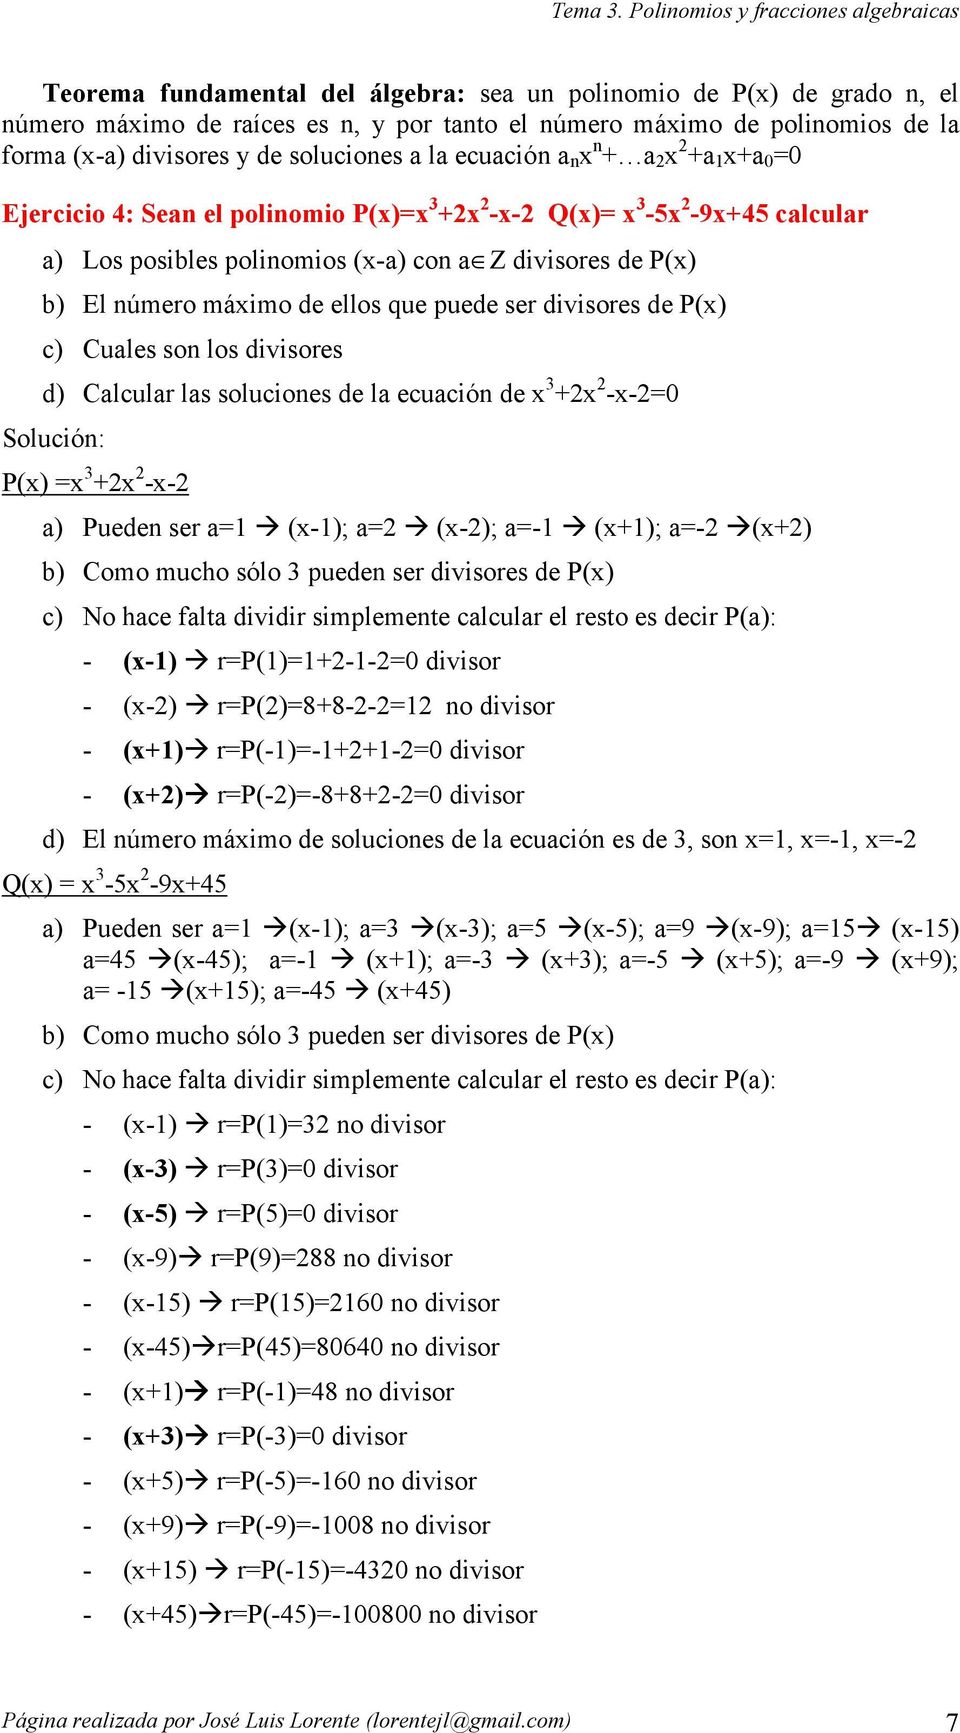 puede ser divisores de P) c) Cuales son los divisores d) Calcular las soluciones de la ecuación de --0 Solución: P) -- a) Pueden ser a -); a -); a- ); a- ) b) Como mucho sólo pueden ser divisores de